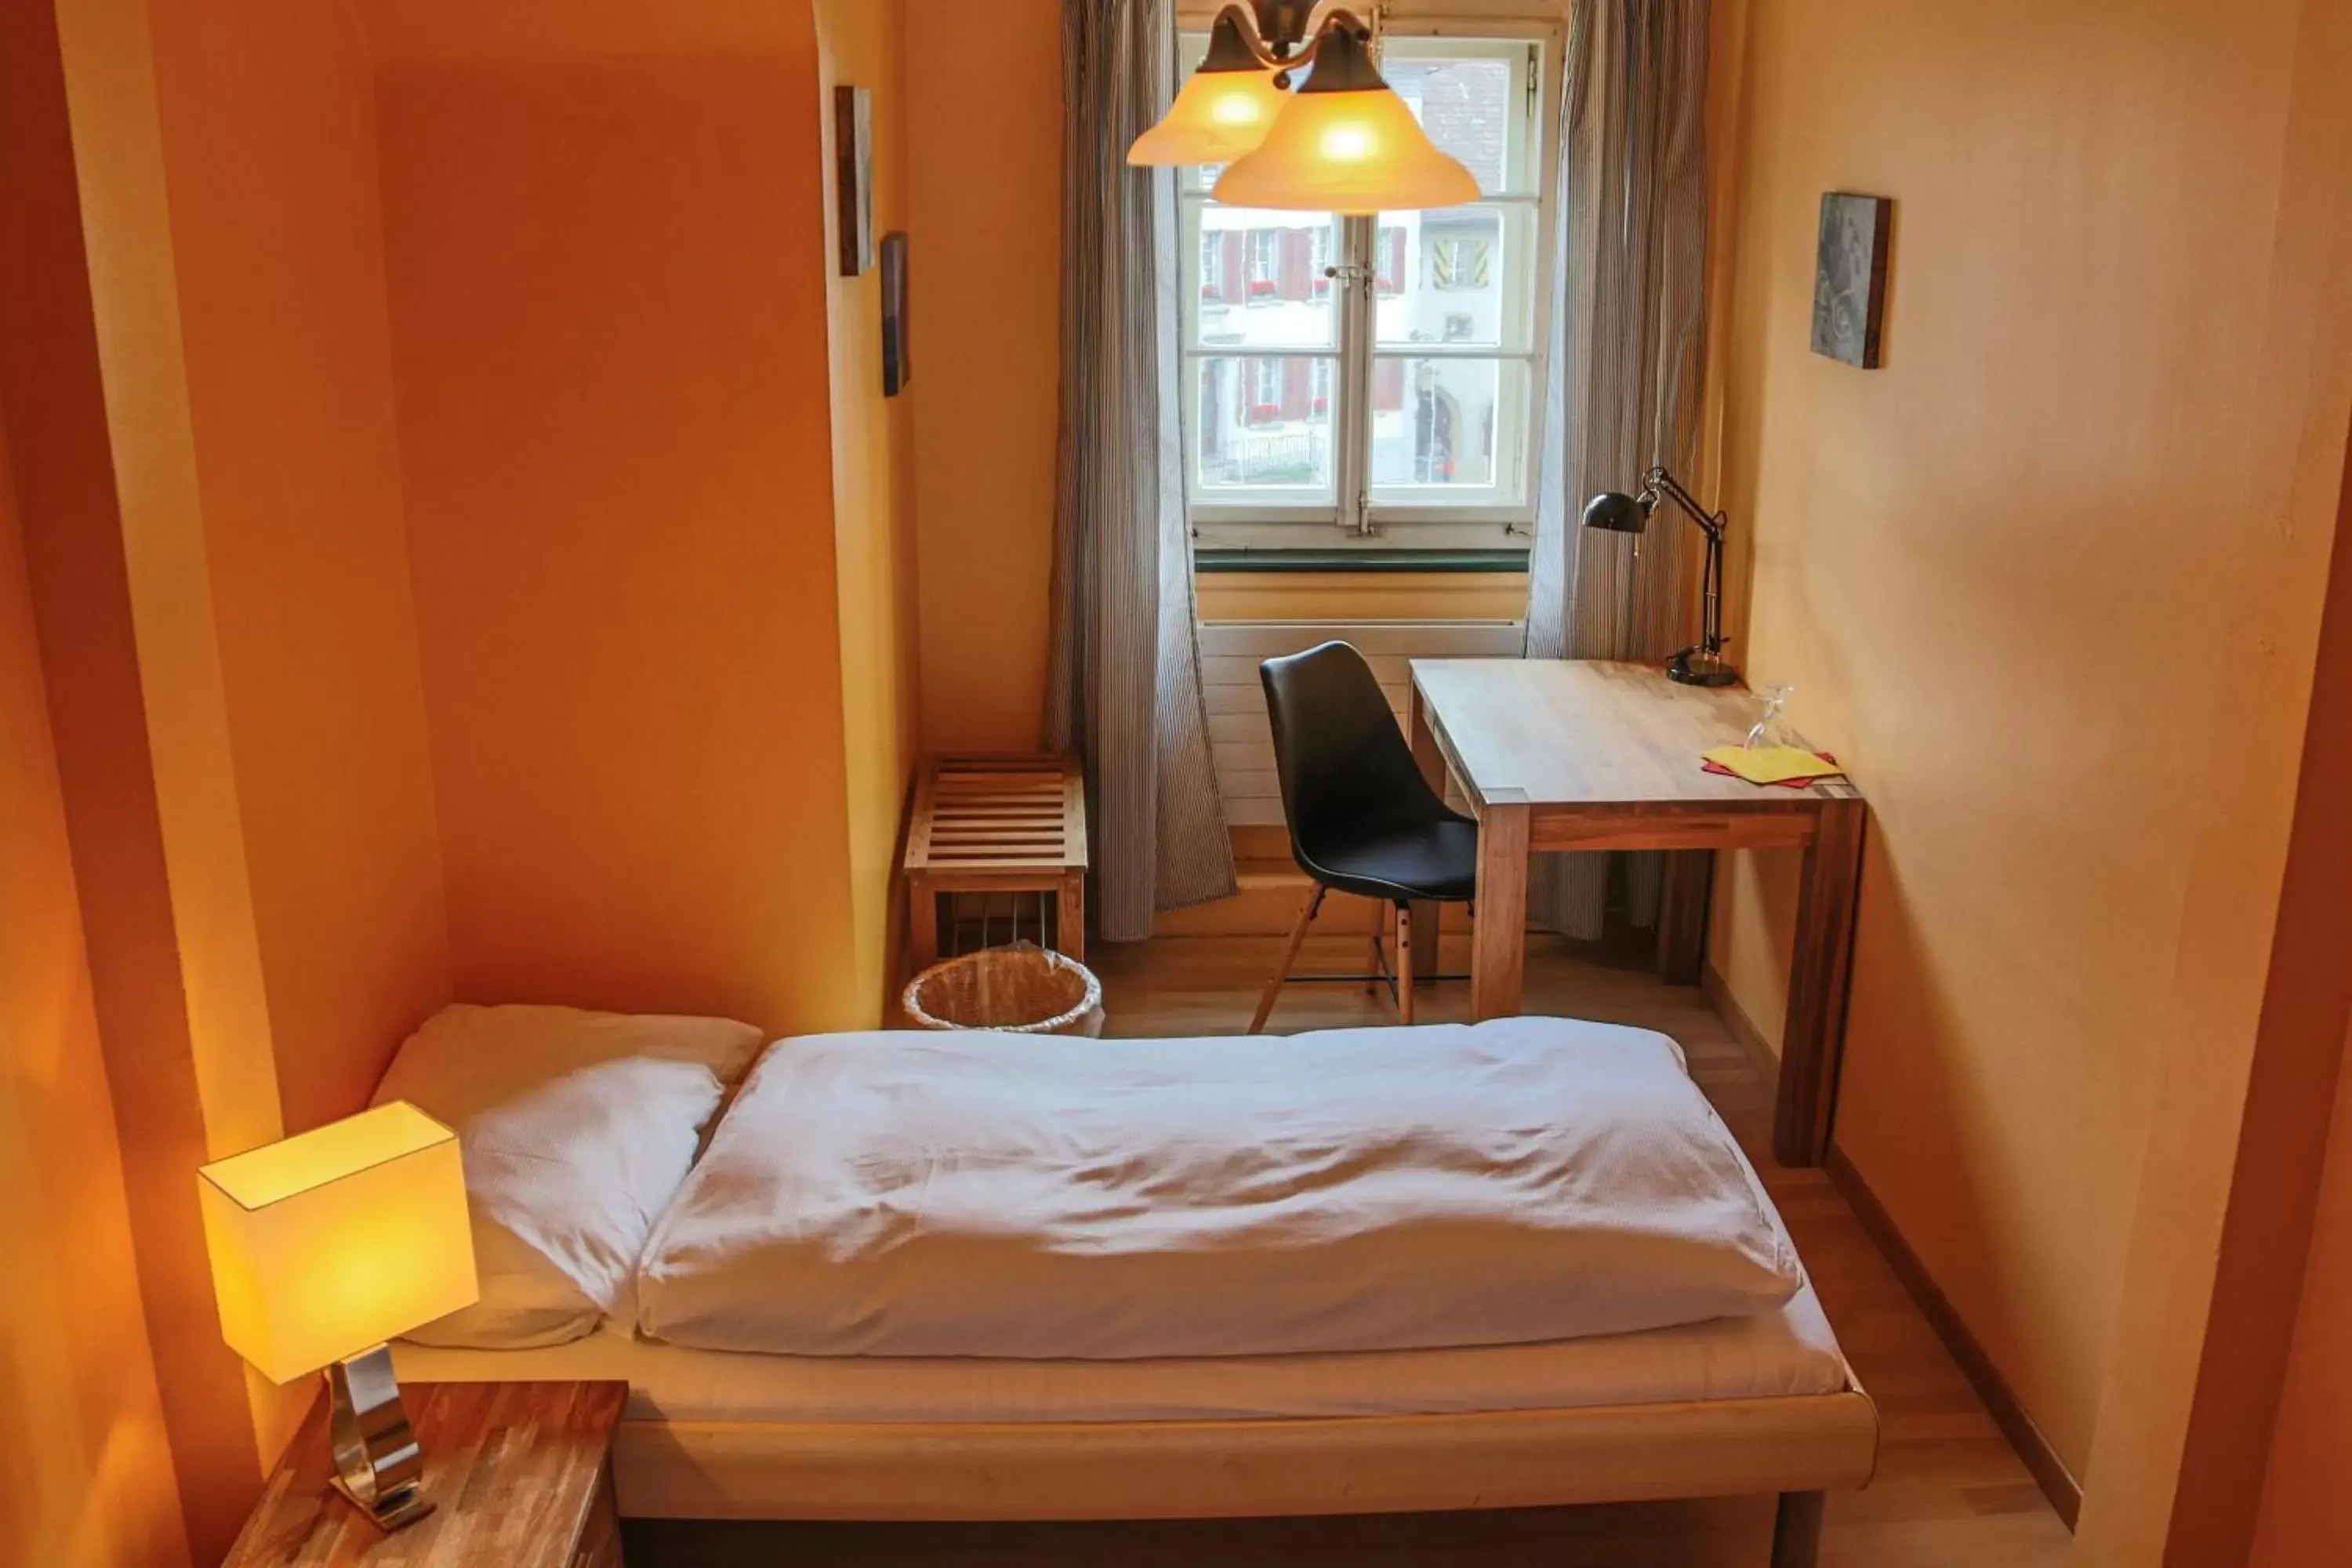 Bed in Gasthof Bären Aarburg last Check in 2100 pm